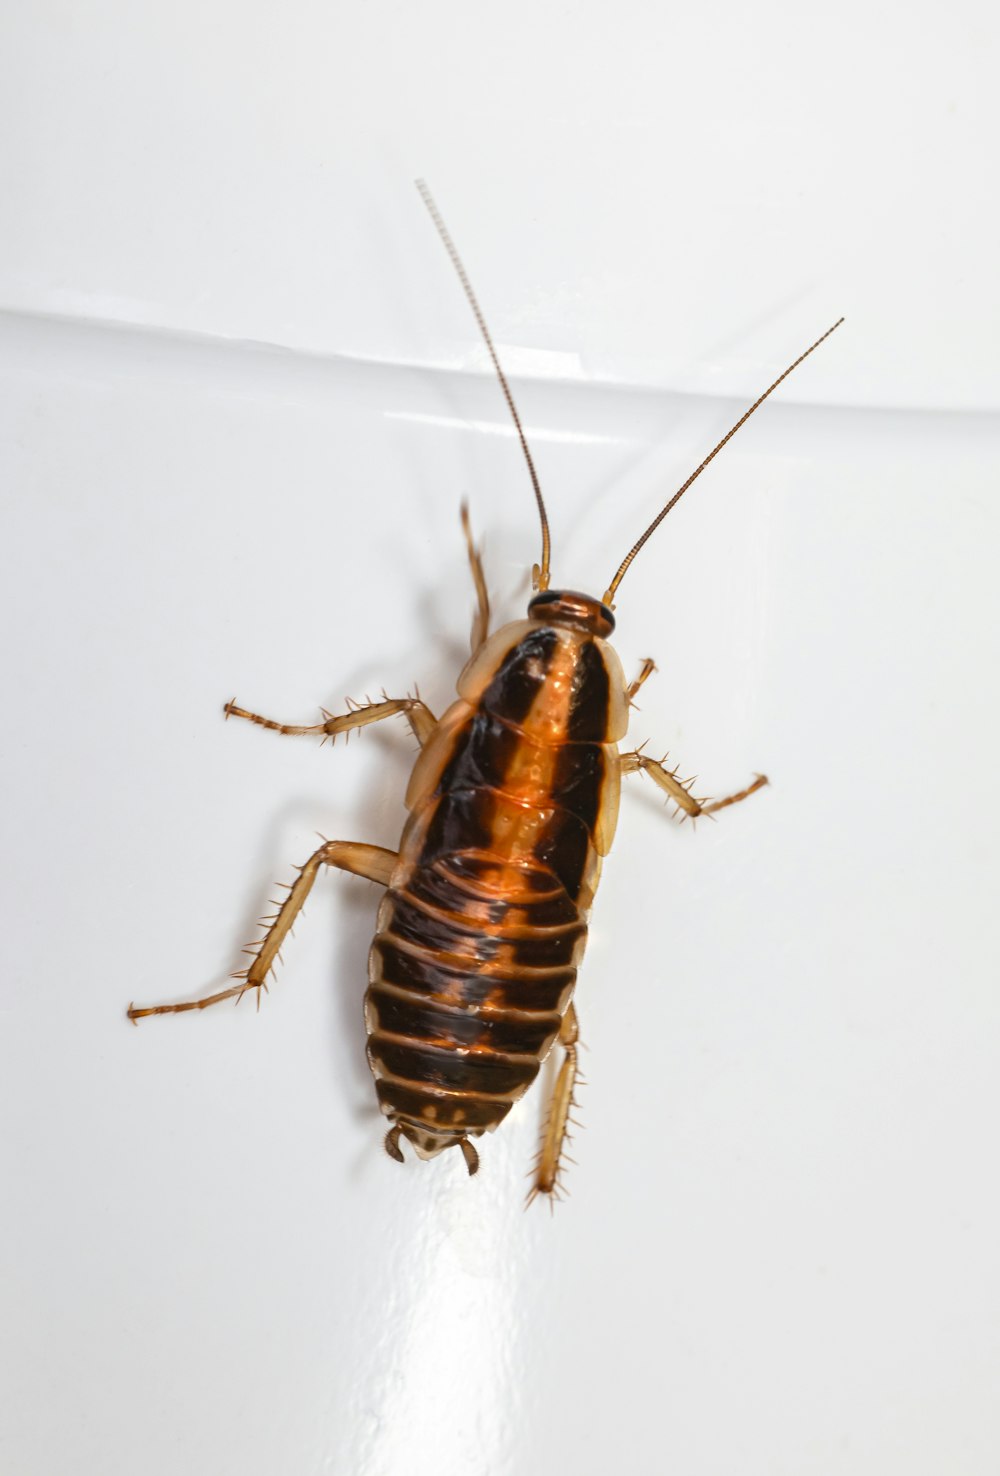 Un insecto marrón y negro sobre una superficie blanca